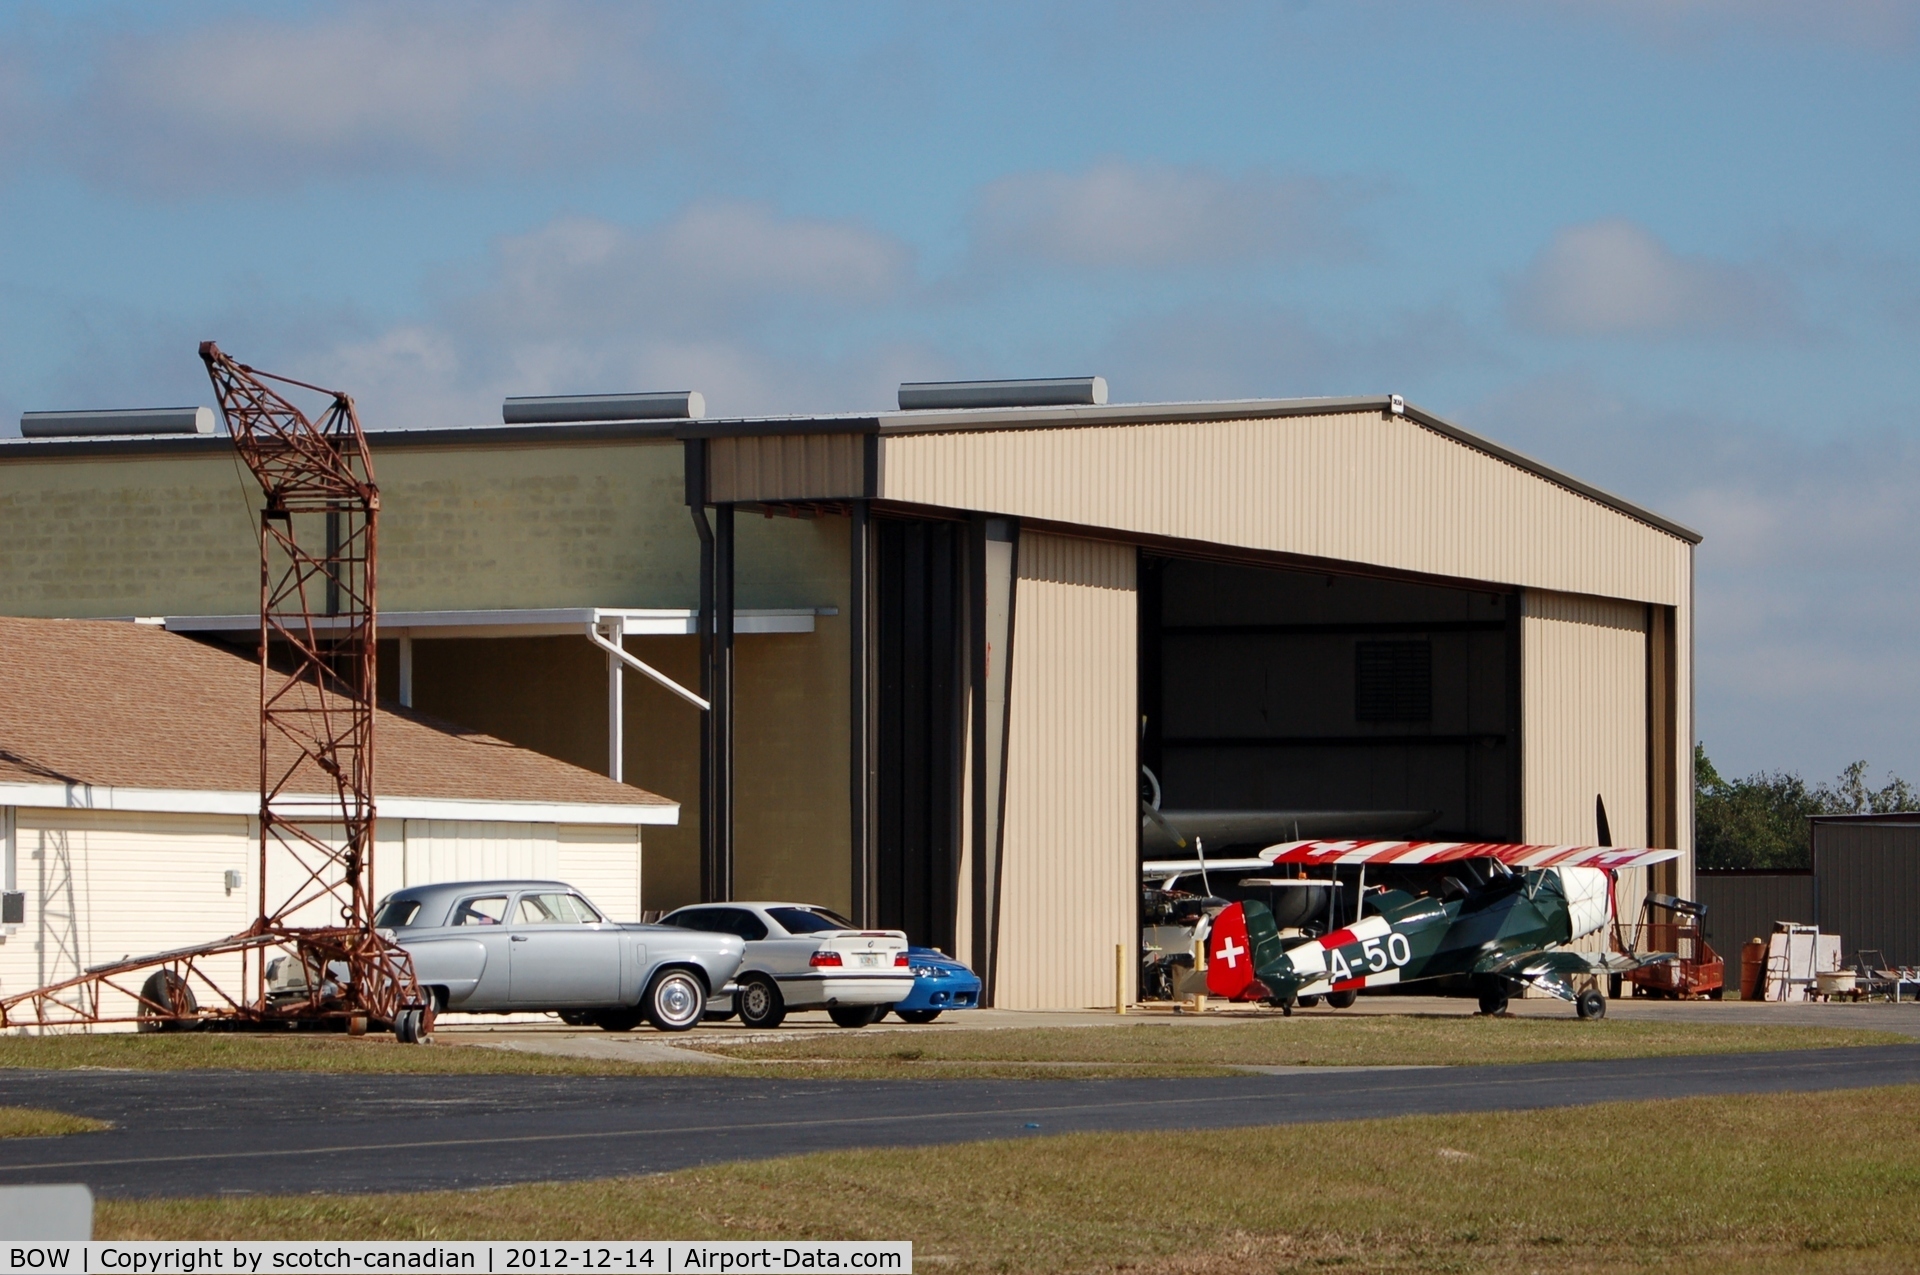 Bartow Municipal Airport (BOW) - Hangar at Bartow Municipal Airport, Bartow, FL 